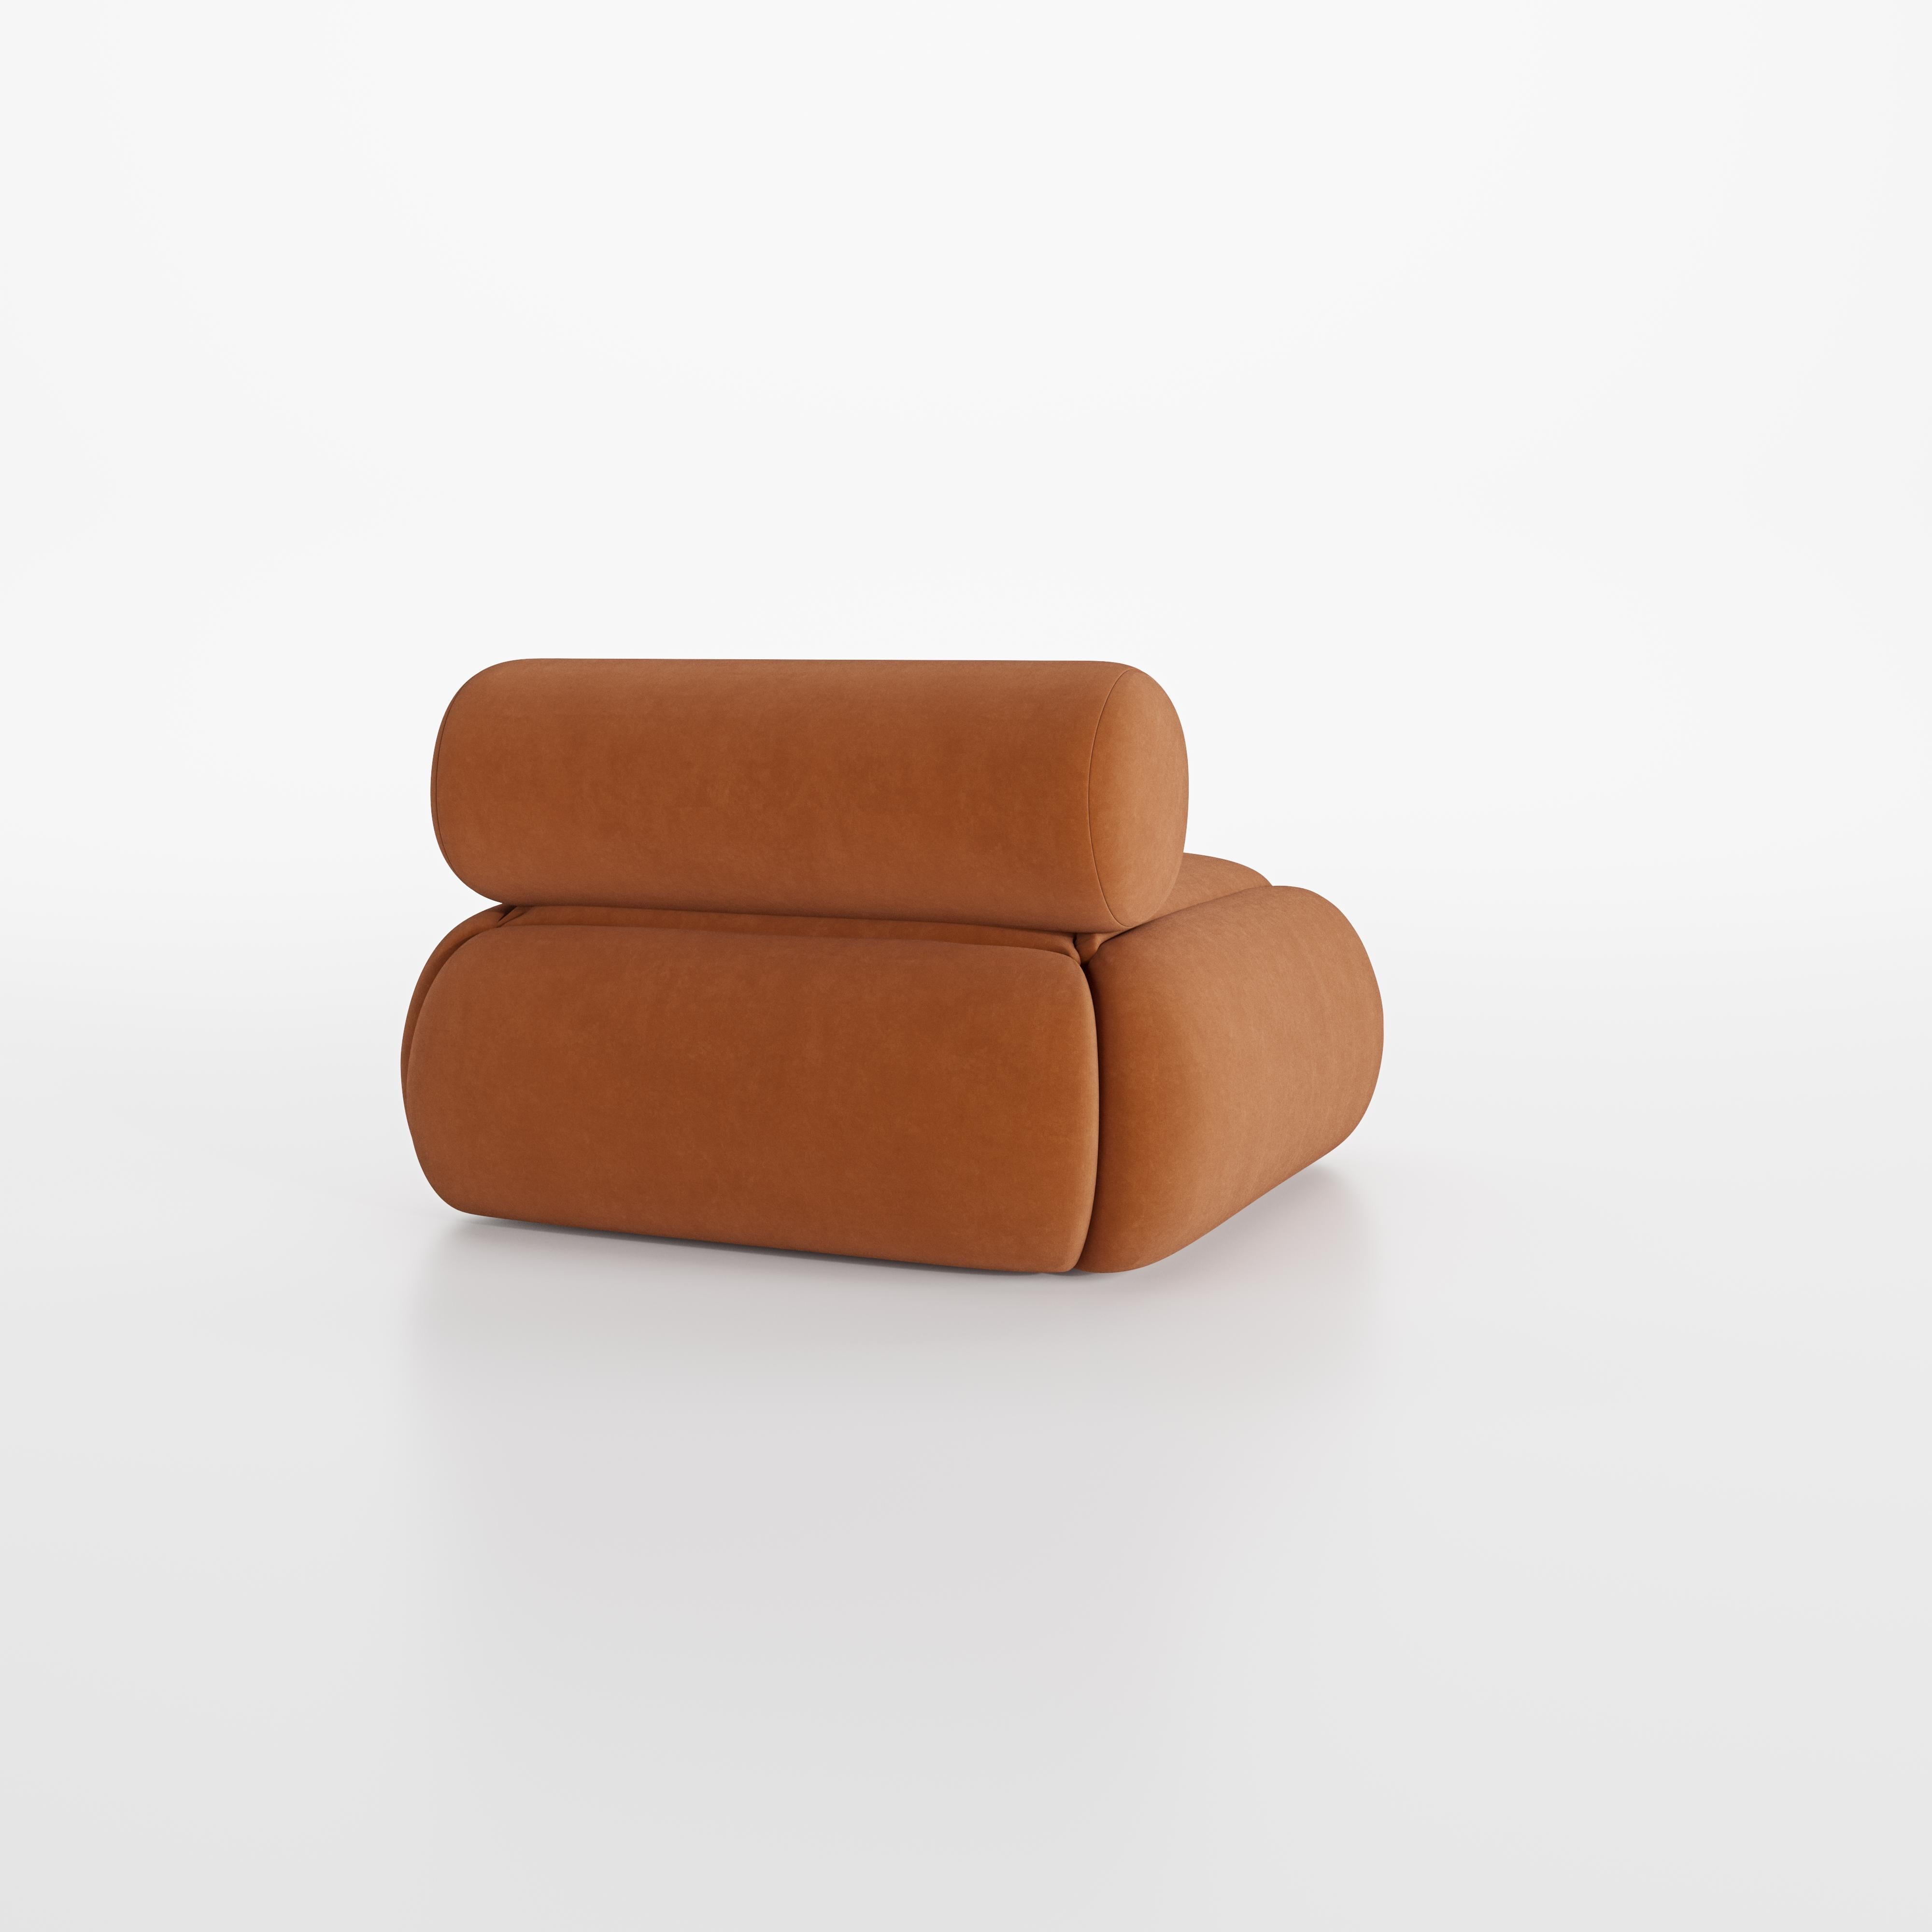 Weich, rund und kräftig. Lupin Sofa wurde für den Komfort entworfen, das perfekte Sofa zum Entspannen nach einem langen Tag.

Sitz und Kissen bestehen aus Memory-Schaum. Lupin wird auf Bestellung von lokalen Kunsthandwerkern in Portugal